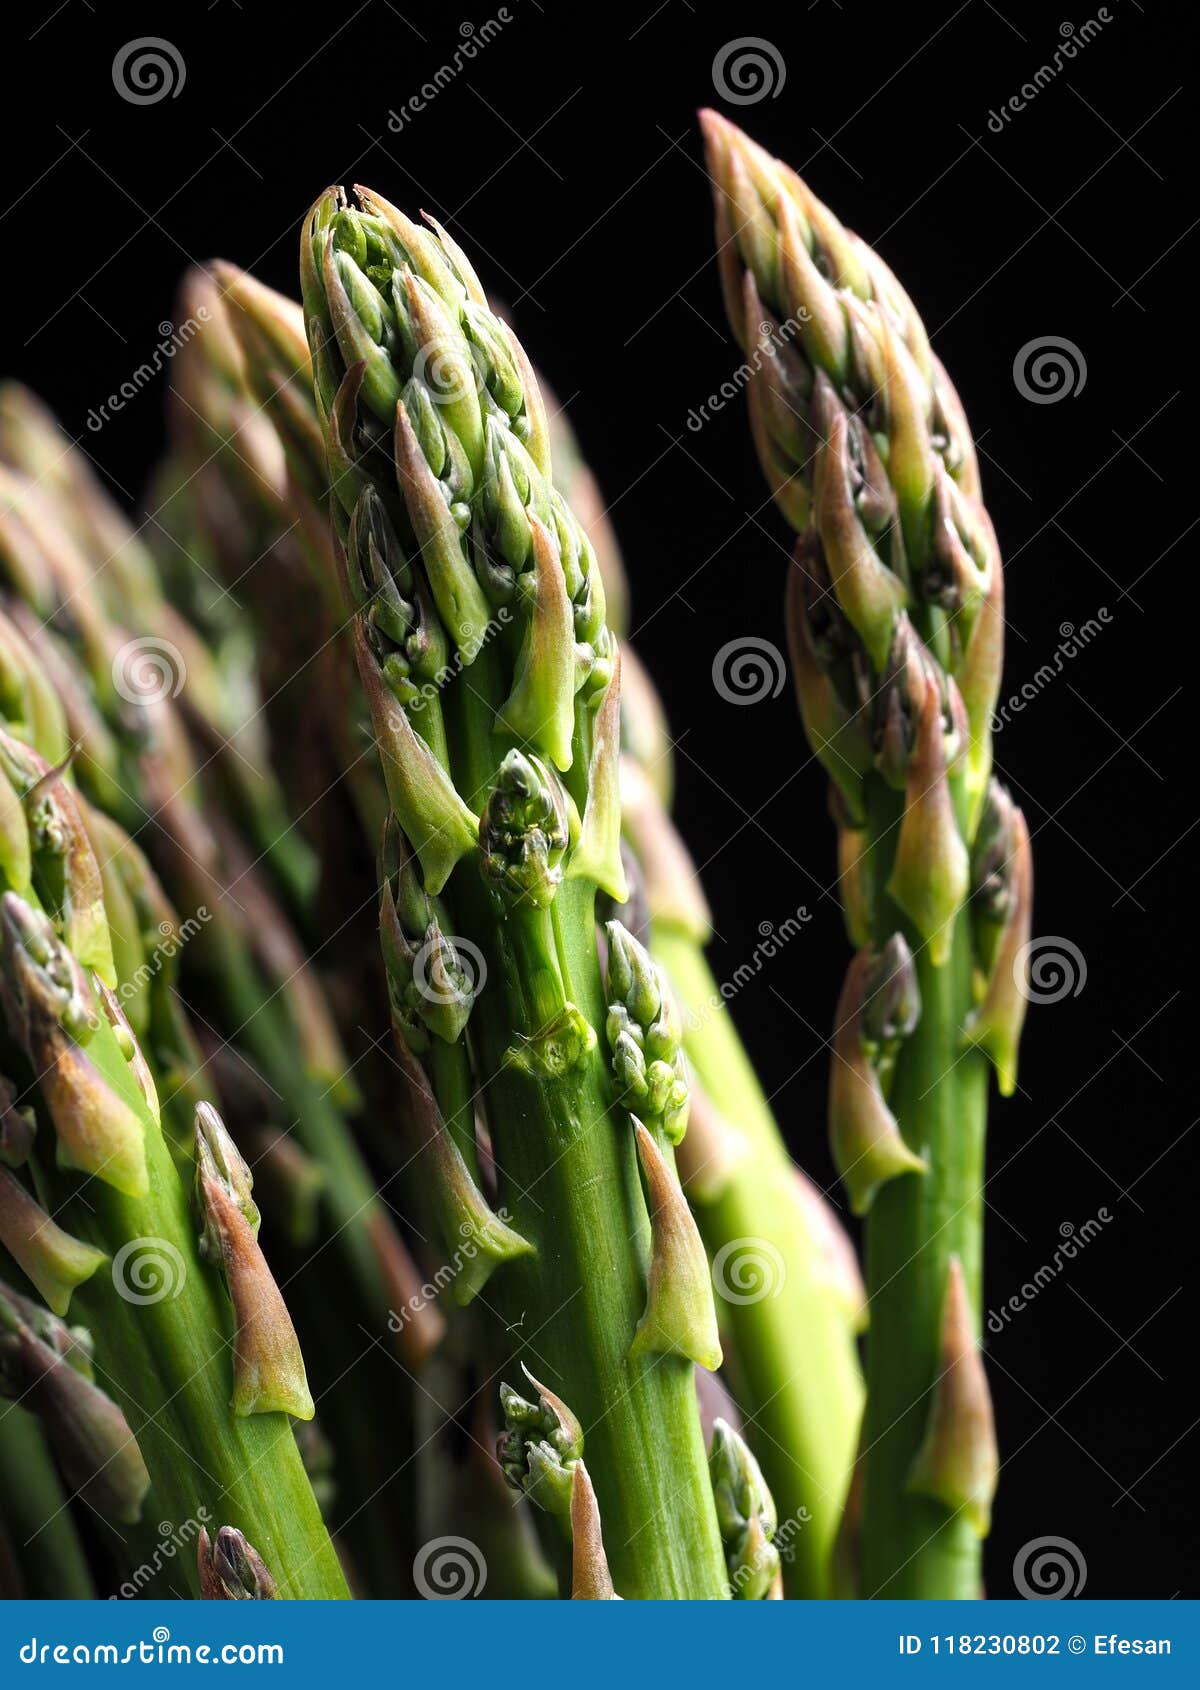 asparagus Ã¢â¬â esparragos - asperges